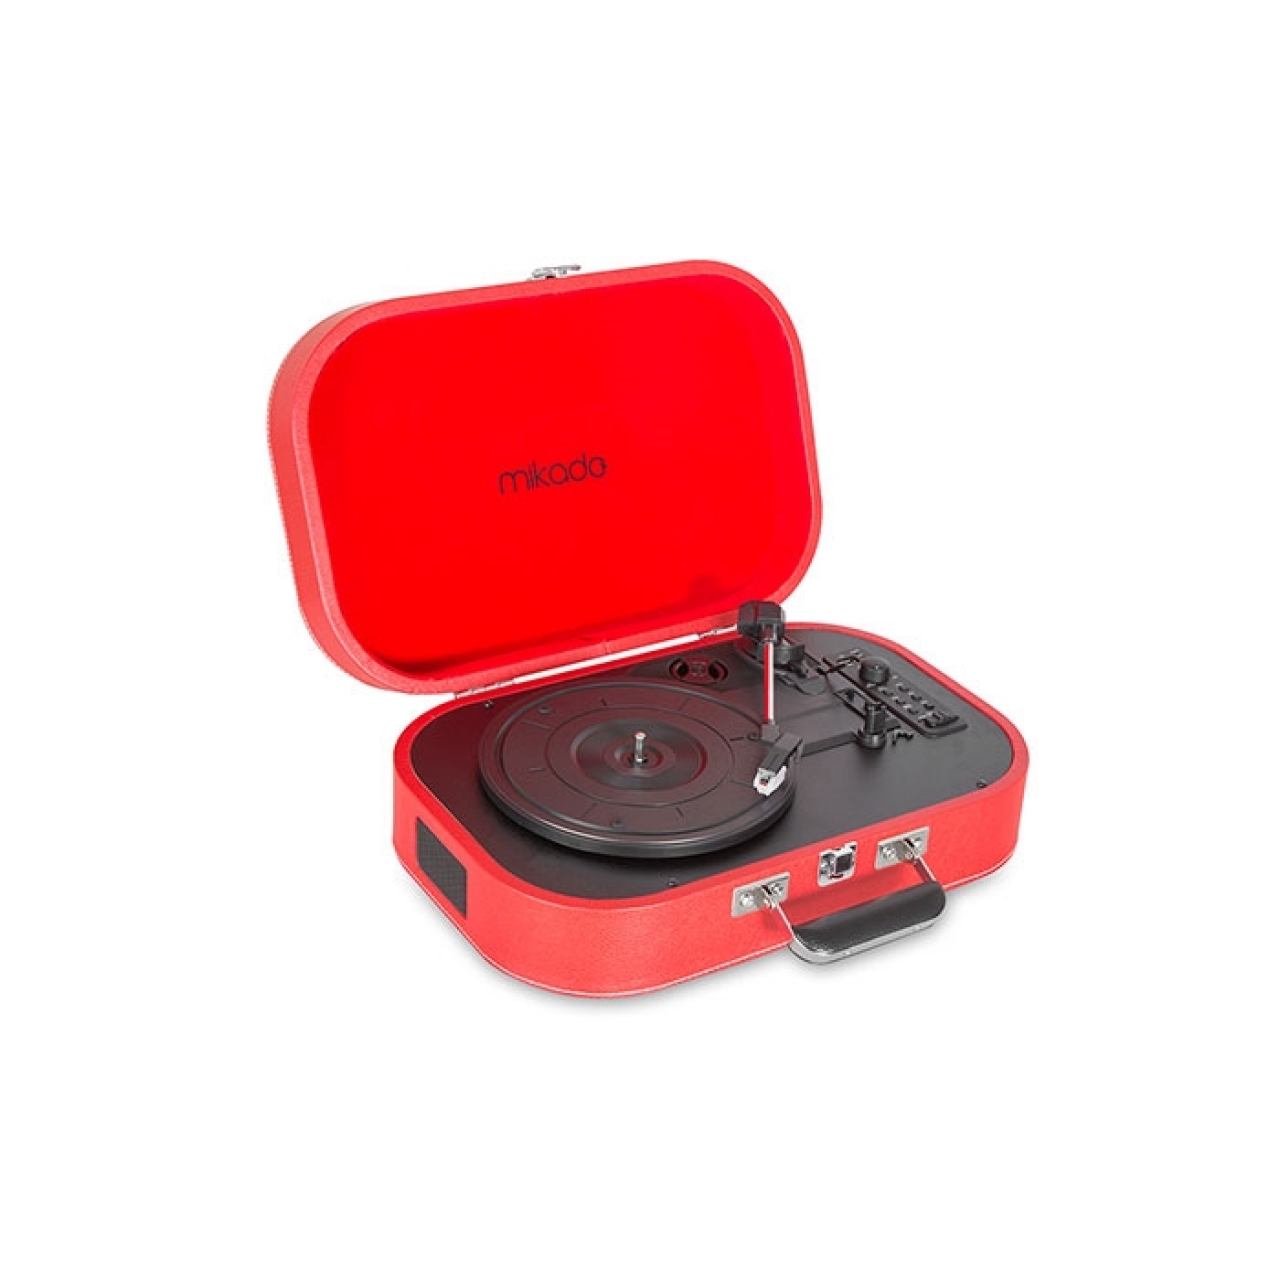 Mikado Nostalgia MN-101 Pikap Kırmızı Usb+RCA+Bluetooth Destekli Müzik Kutusu